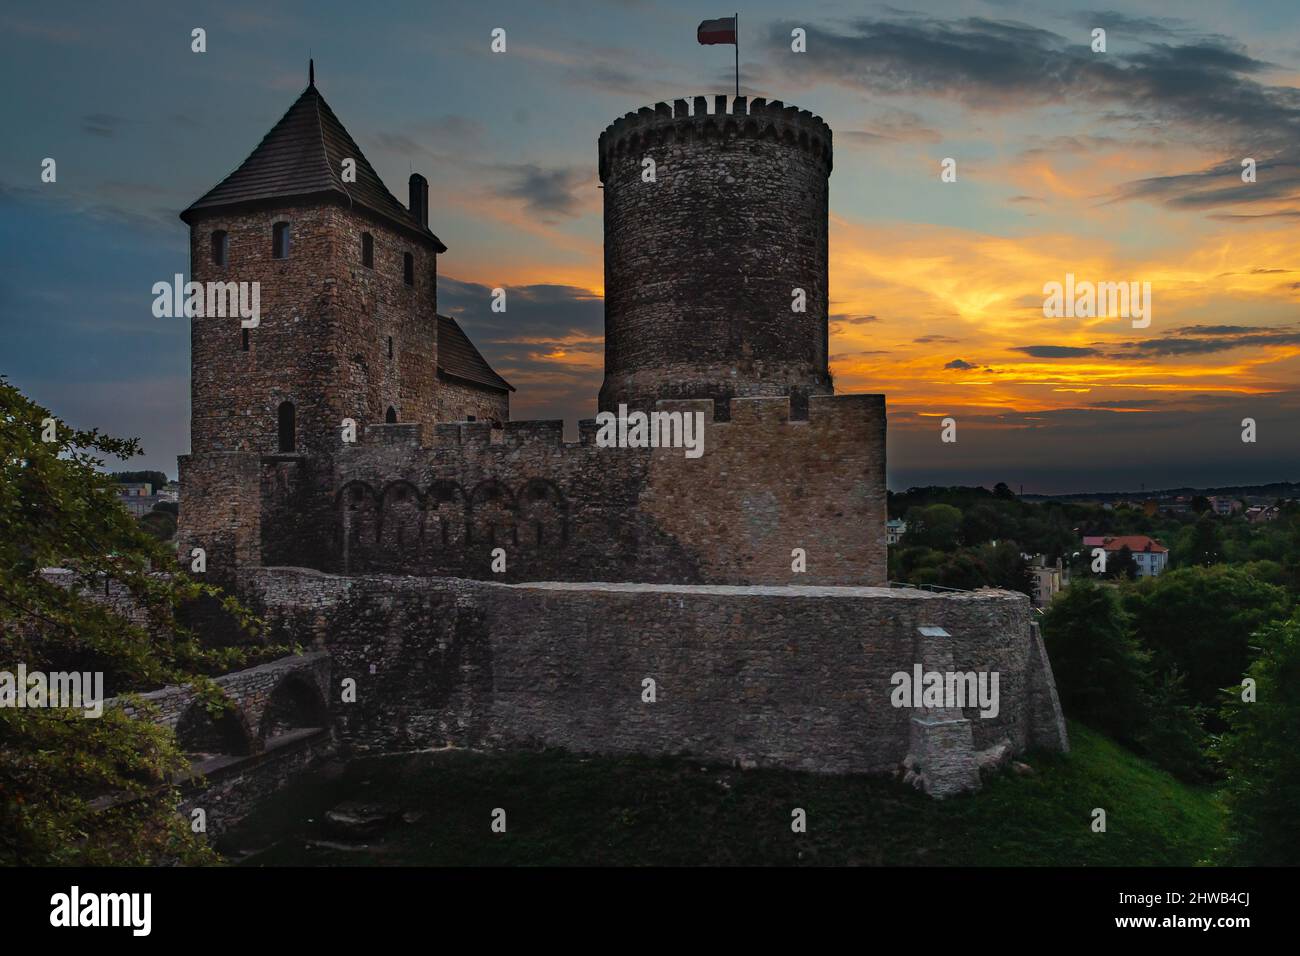 Zamek w Będzinie podczas zachodzącego słońca-Poland Stock Photo